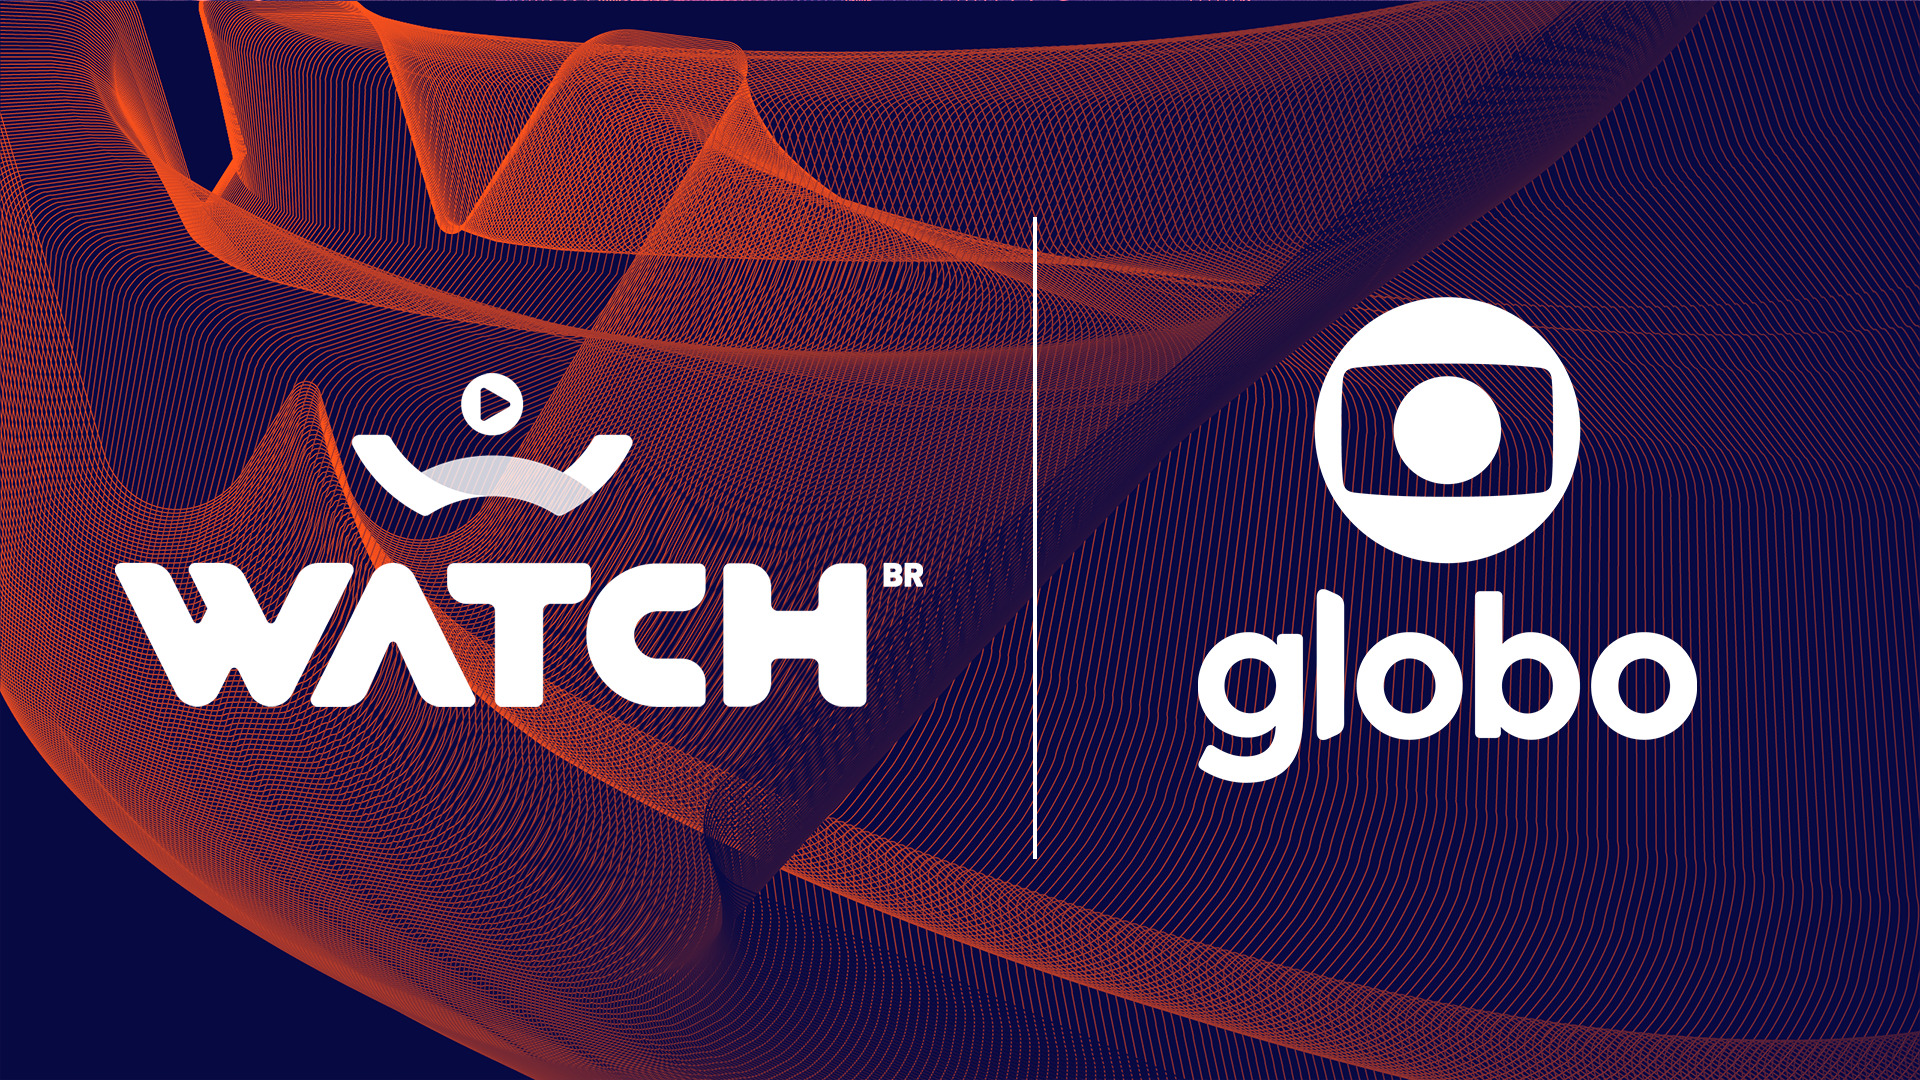 Globoplay faz parceria para levar recursos do streaming para a TV aberta -  Jornal O Globo